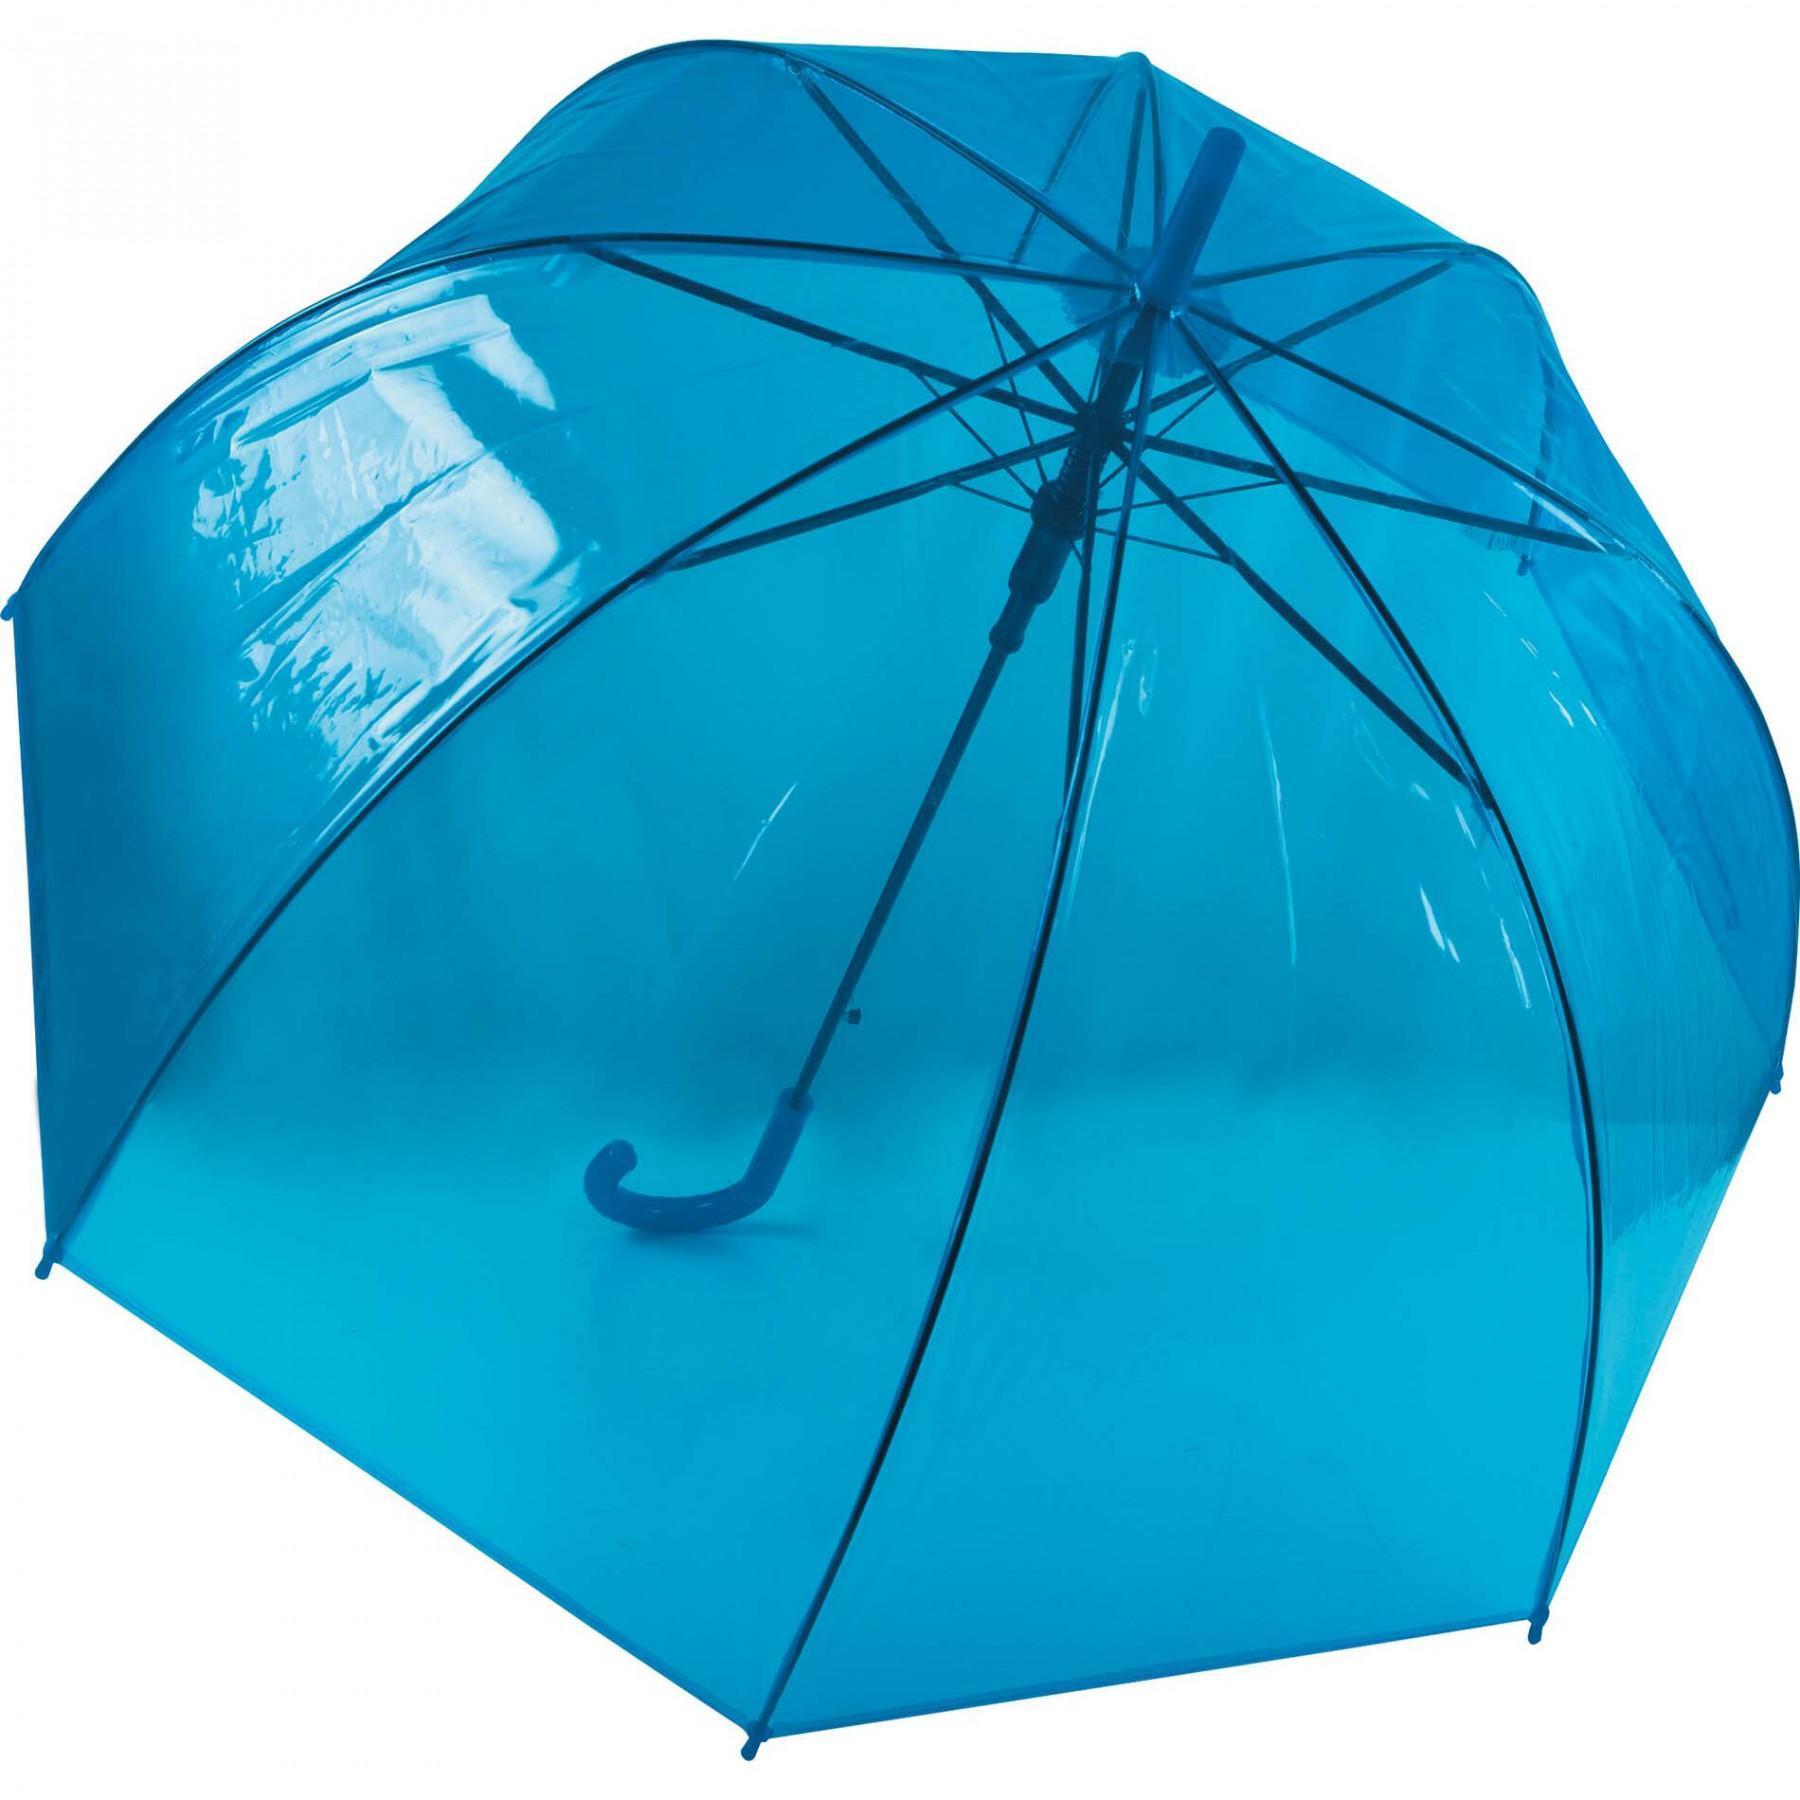 Paraguas Klmood Transparente